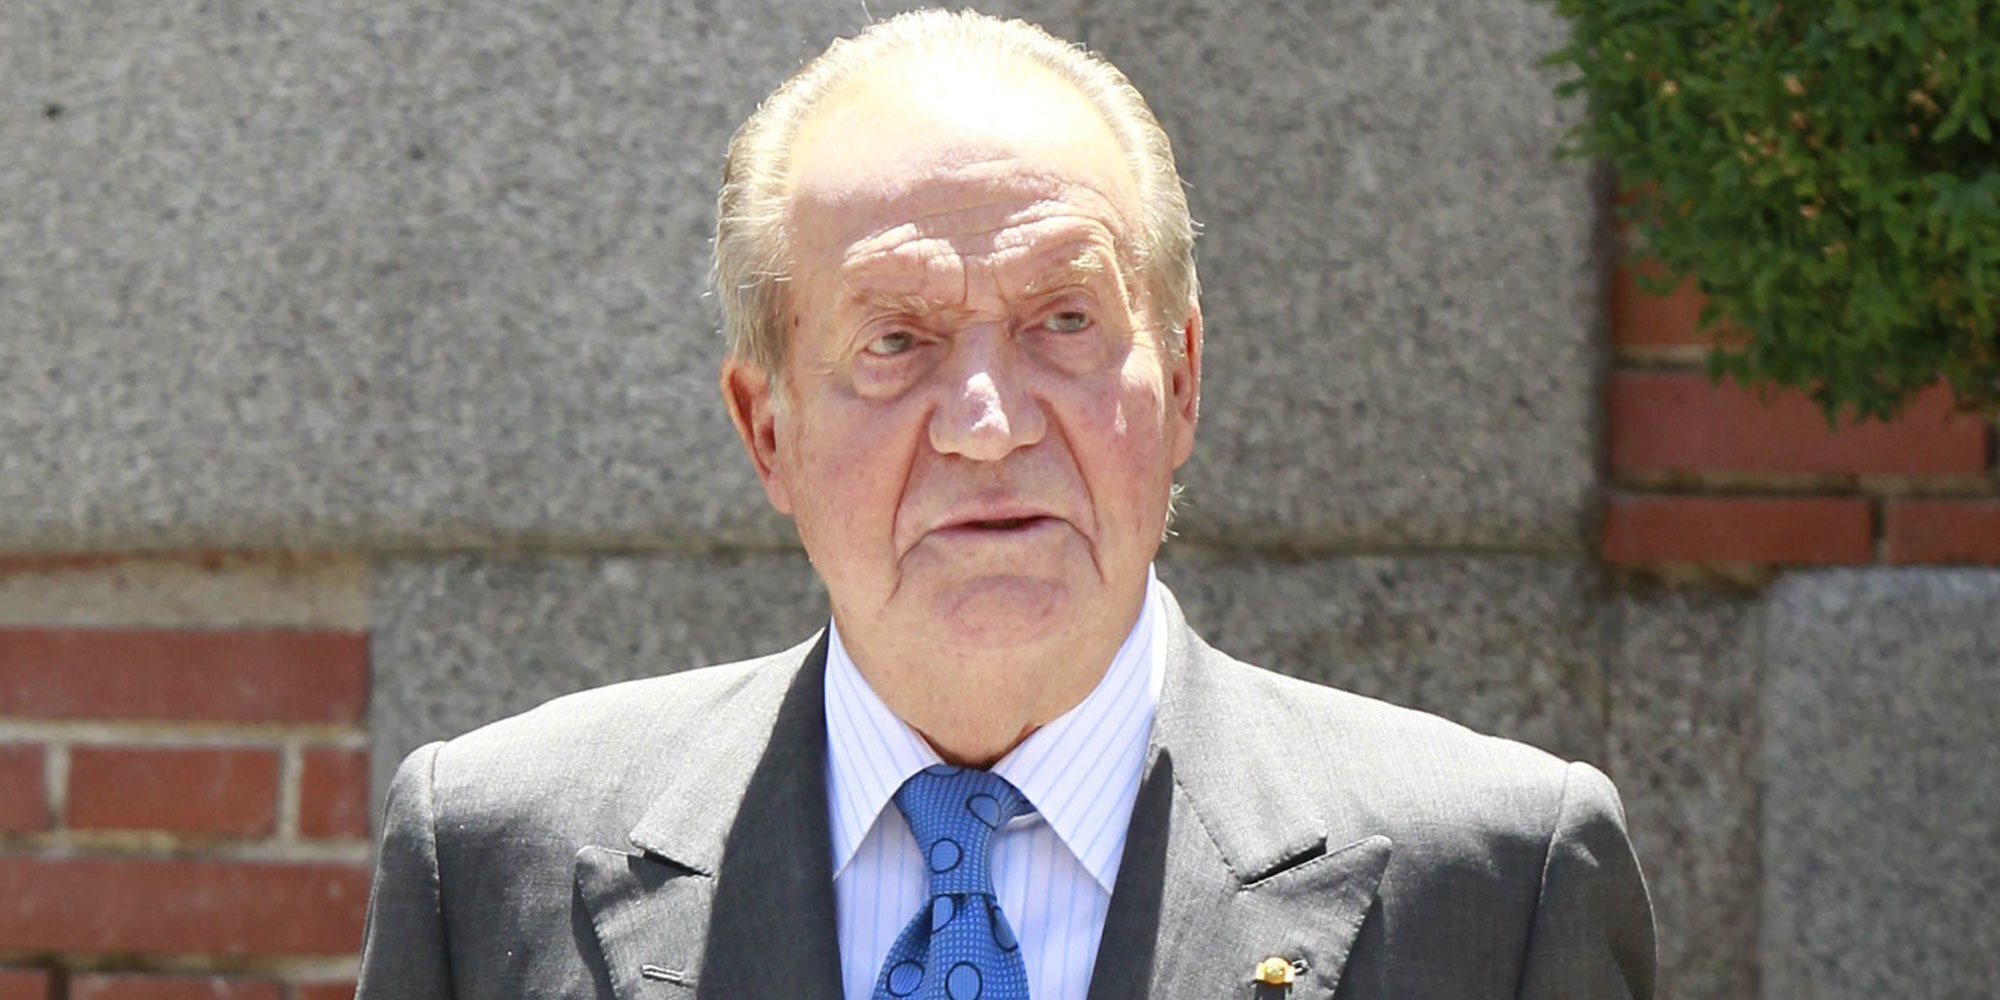 Las claves del comunicado del Rey Juan Carlos: lo que dice, lo que no quiere decir y lo que supone